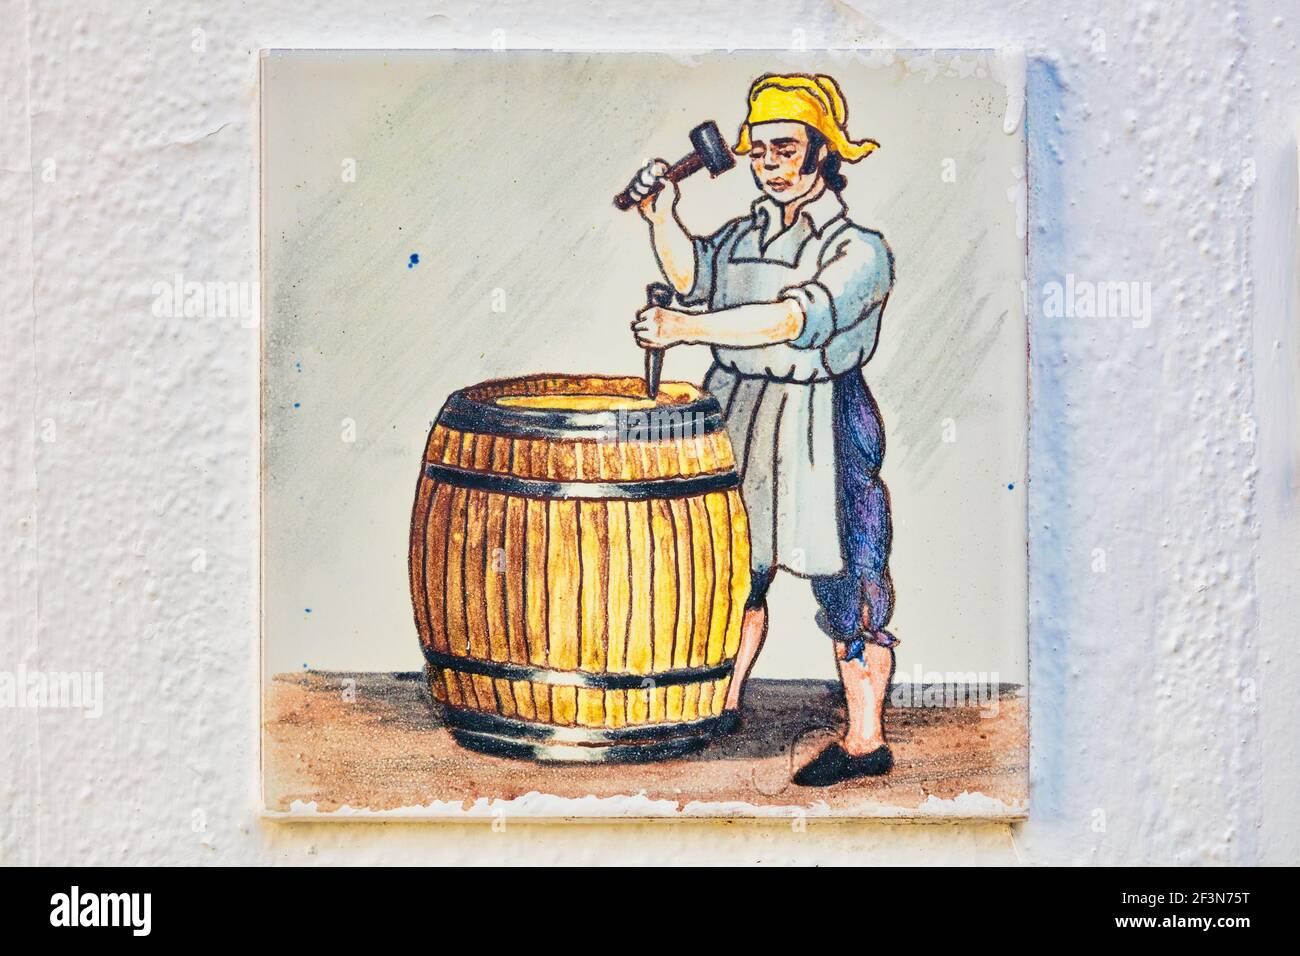 Carreaux de céramique montrant une cooper du XIXe siècle au travail de fabrication d'un baril. Ronda, province de Malaga, Andalousie, Espagne. Banque D'Images